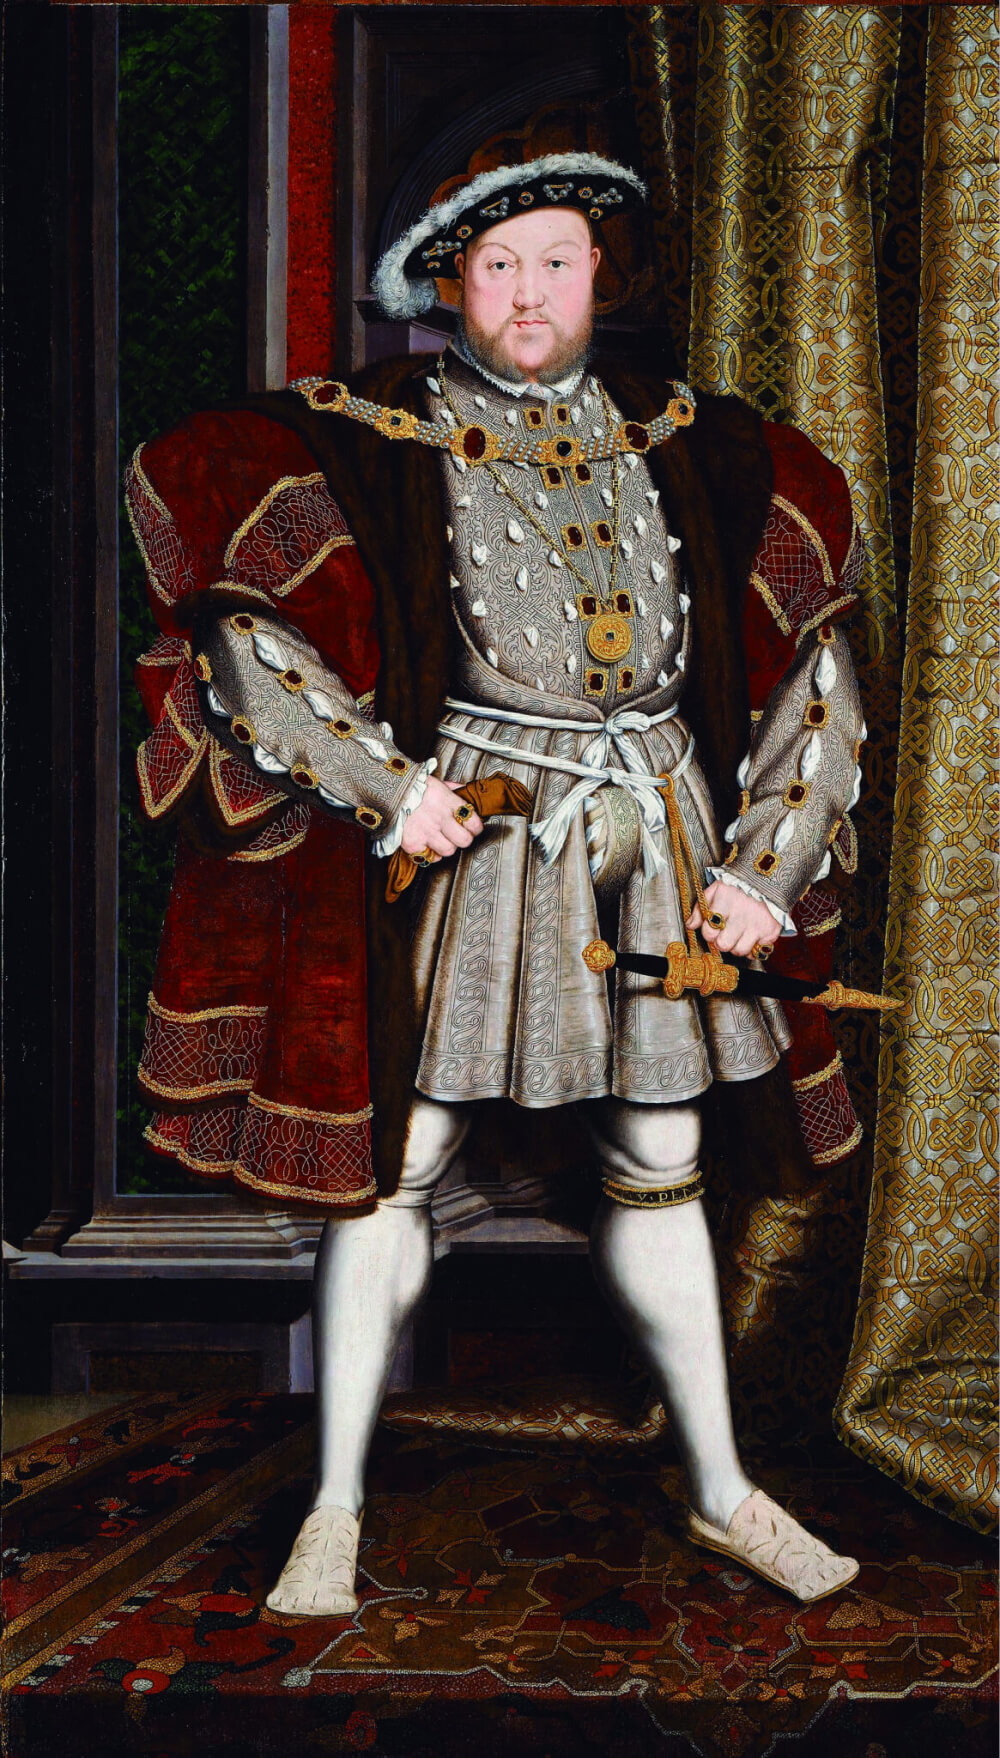 Retrato do Rei Henrique VIII.